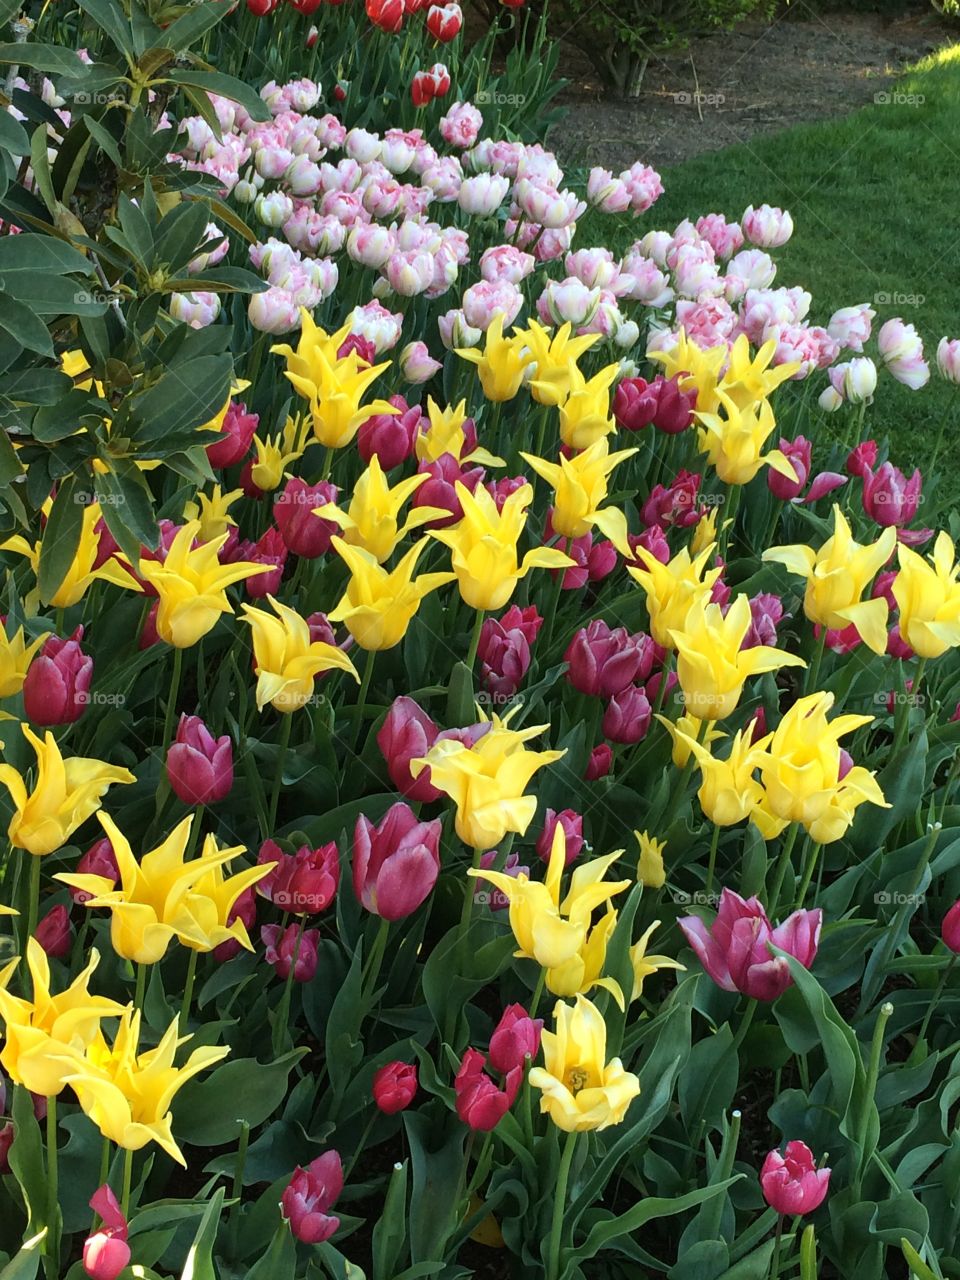 Tulips . In the garden